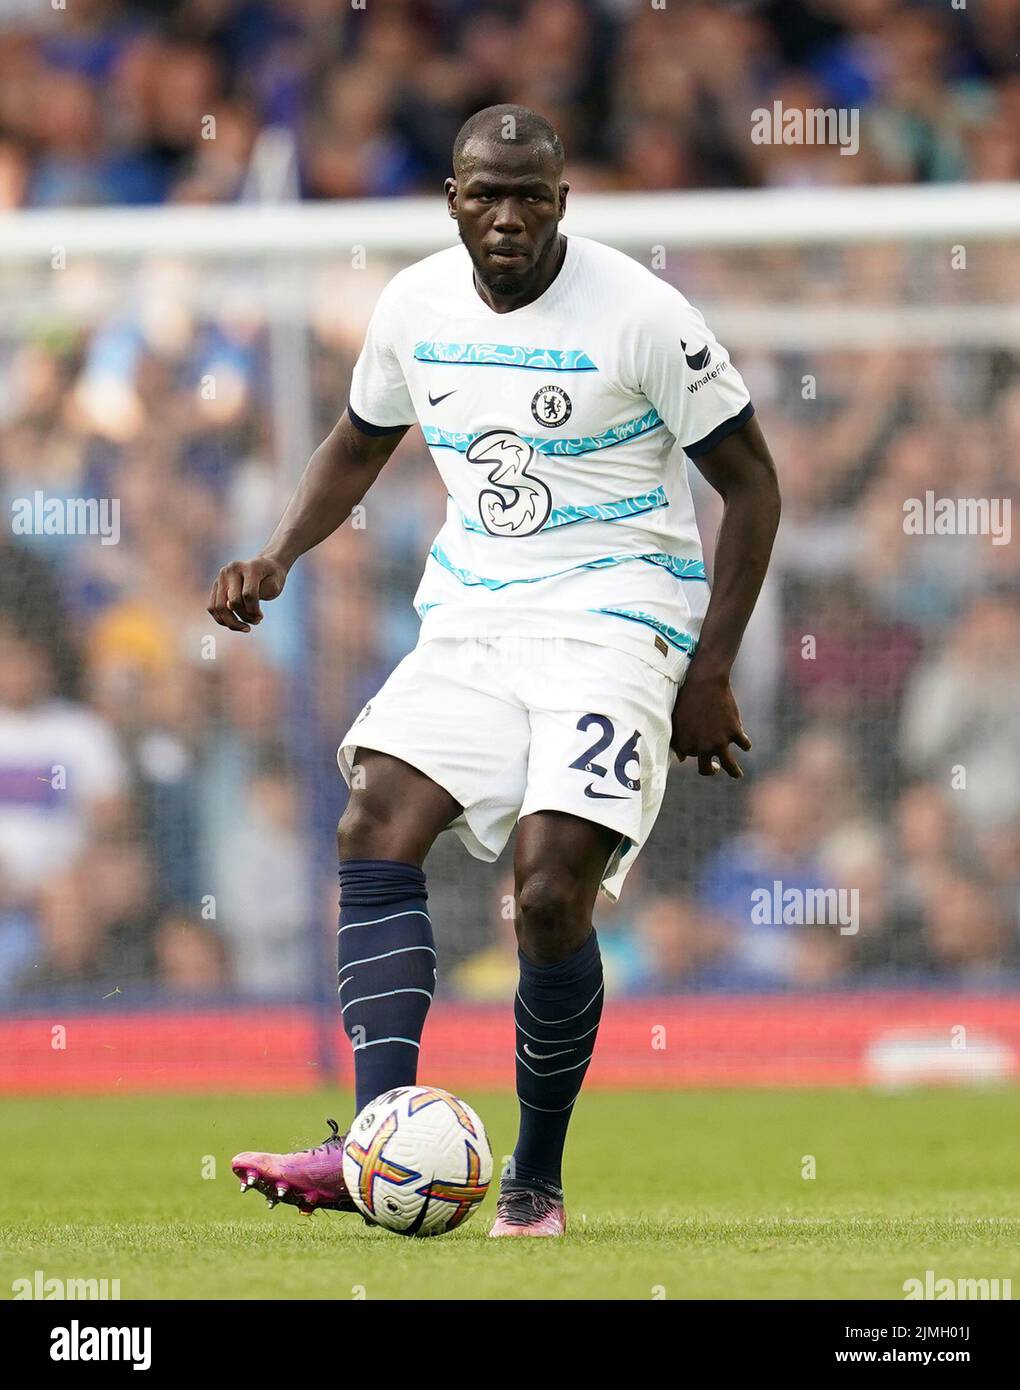 Chelsea's Kalidou Koulibaly während des Spiels der Premier League im Goodison Park, Liverpool. Bilddatum: Samstag, 6. August 2022. Stockfoto